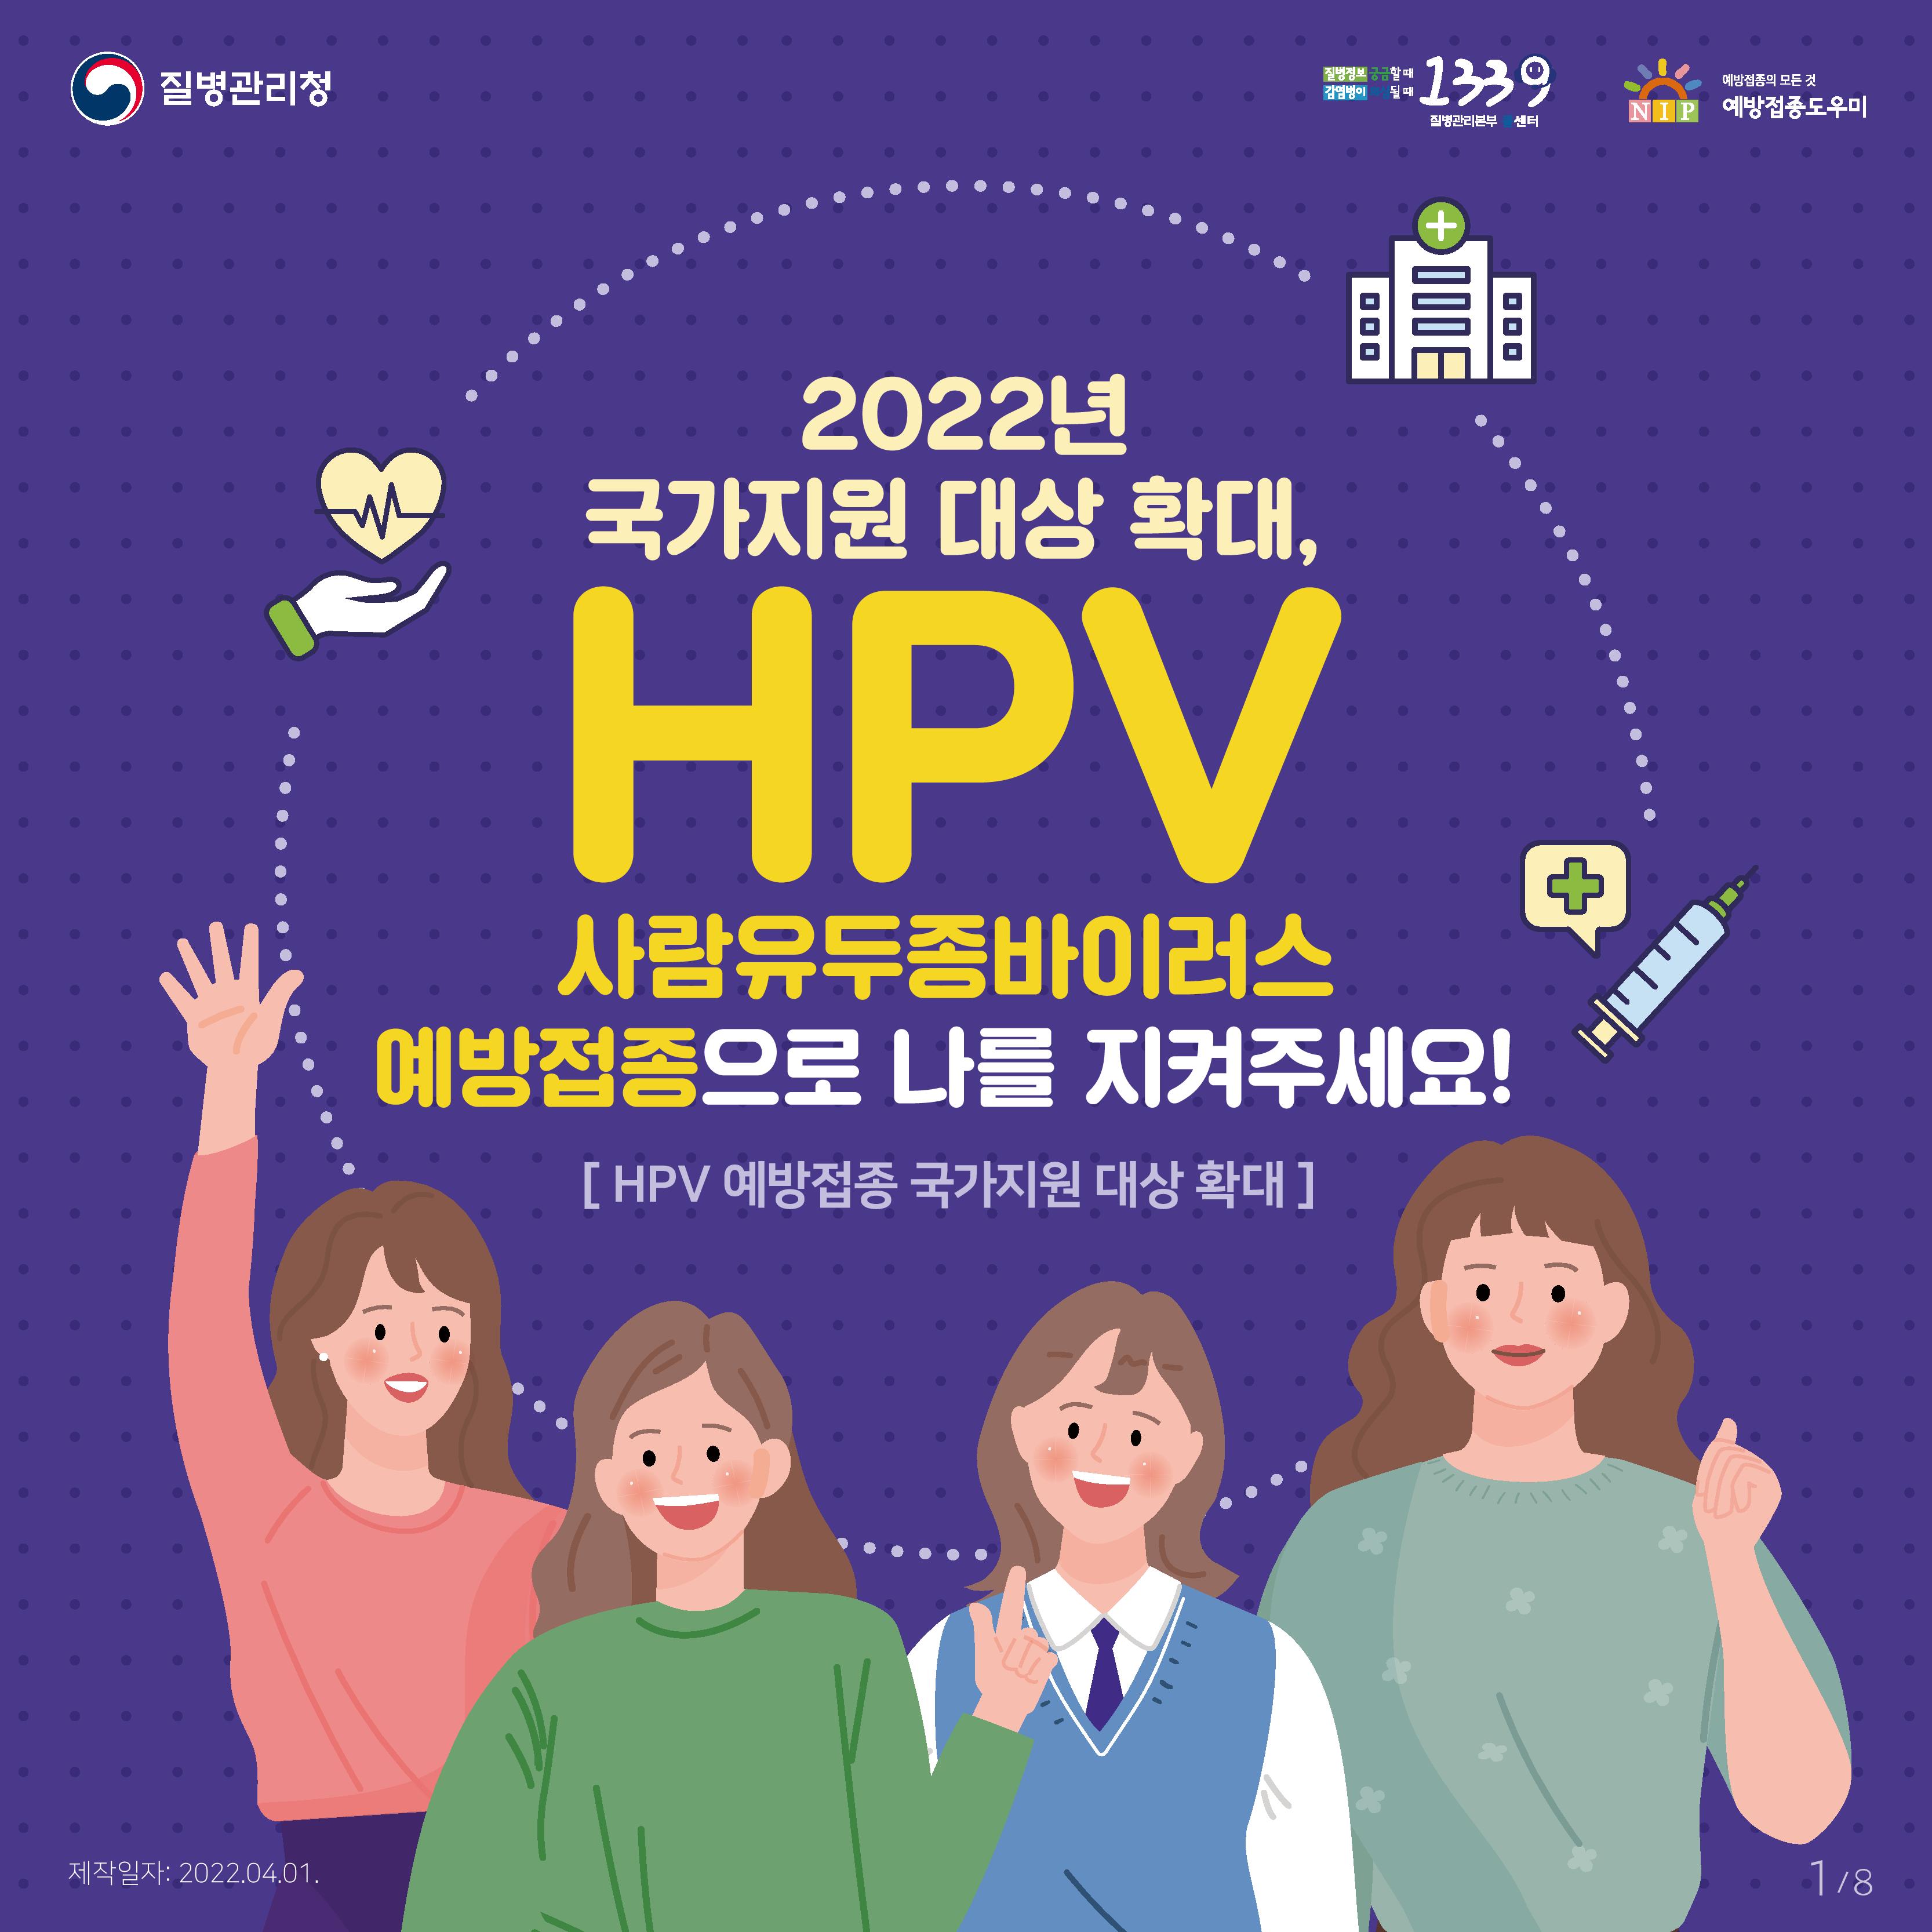 2022년 국가지원 대상 확대, HPV 사람유두종바이러스 예방접종으로 나를 지켜주세요! 사진0